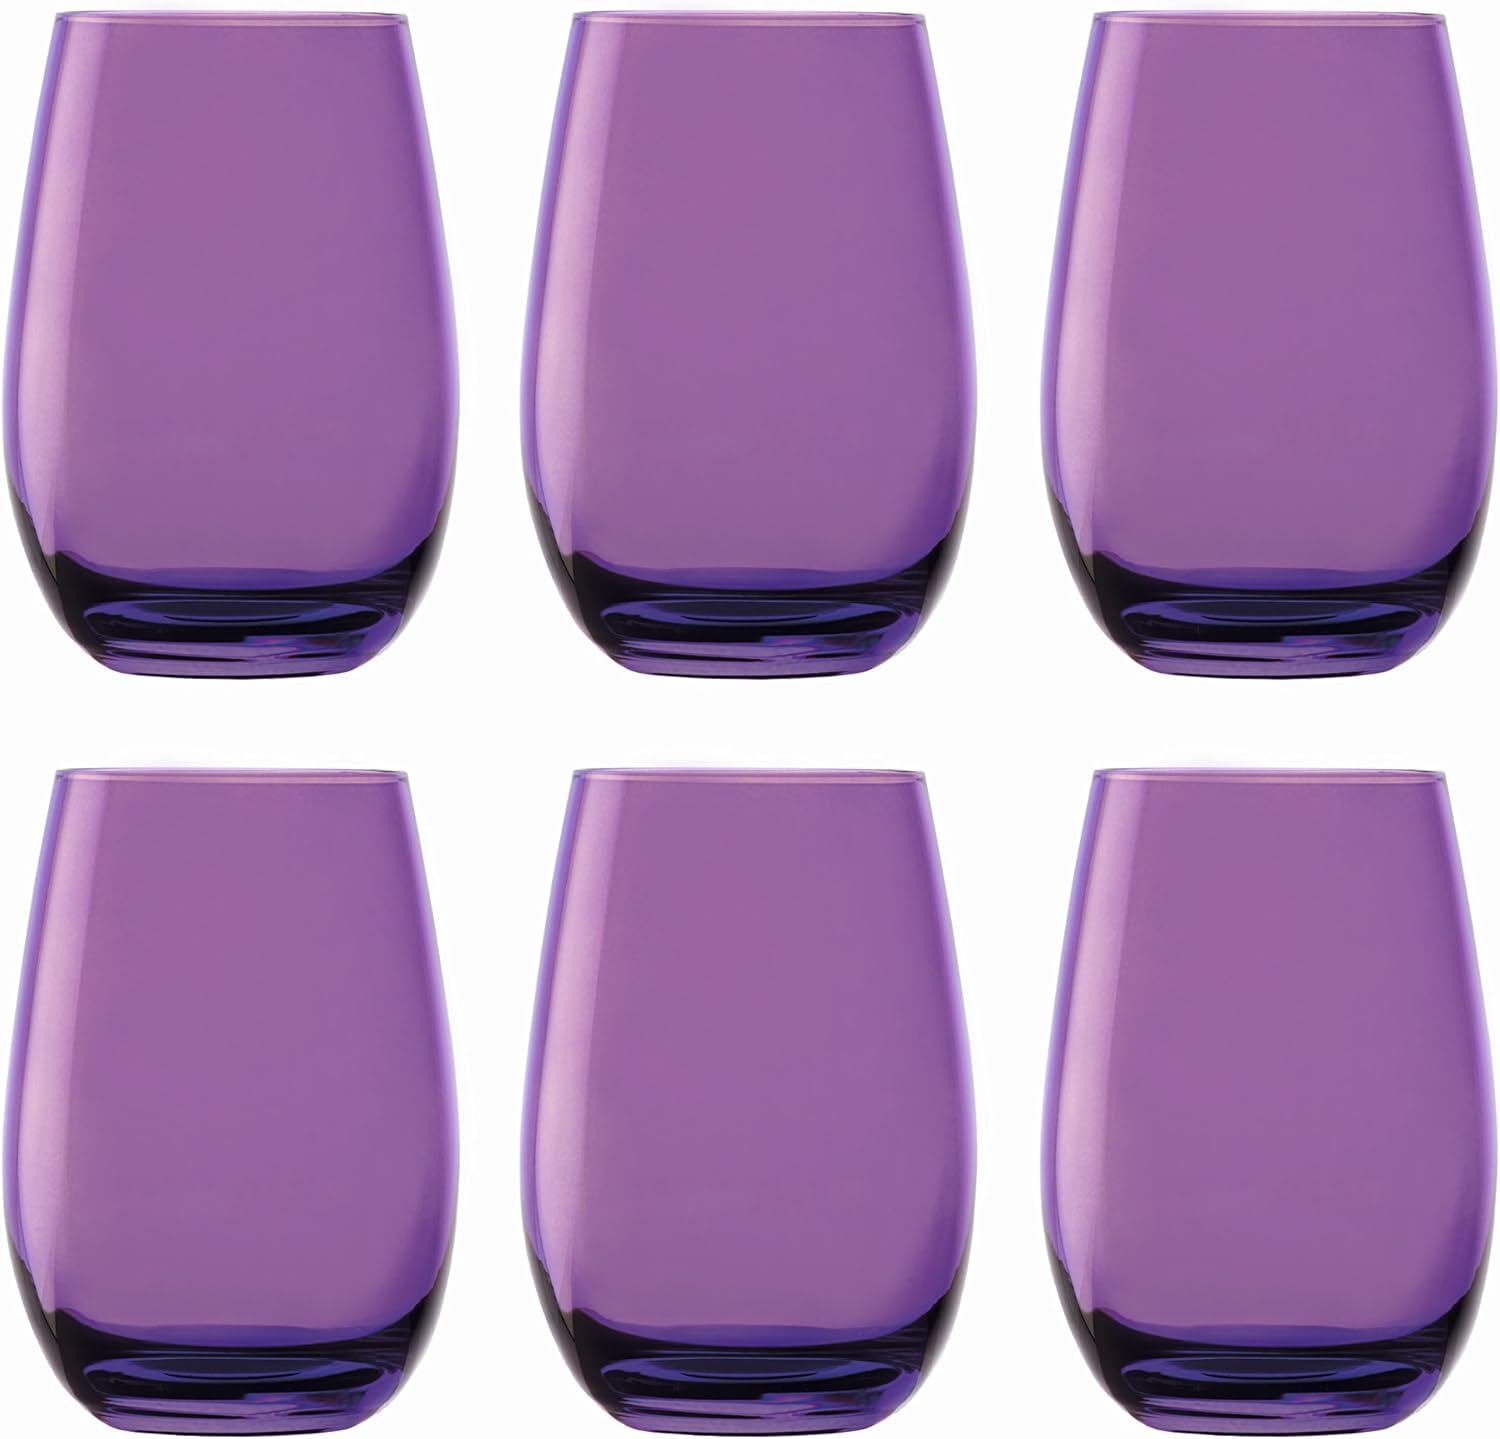 Stölzle Lausitz 352 81 12 Elements Glass Beaker Purple 465 ml, Made in Germany, Set of 6